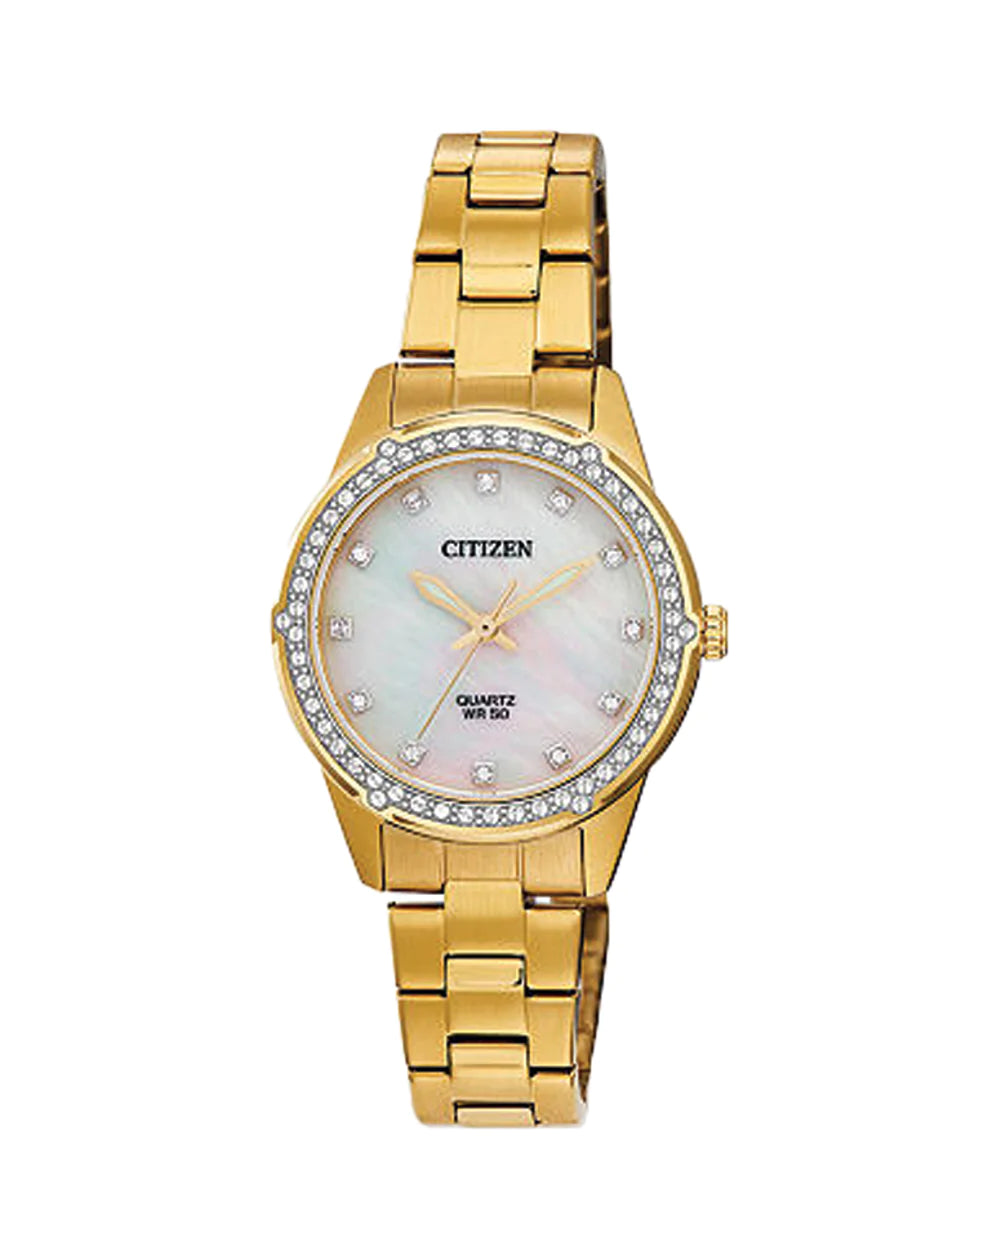 Ladies Gold Citizen Quartz Watch with Crystals